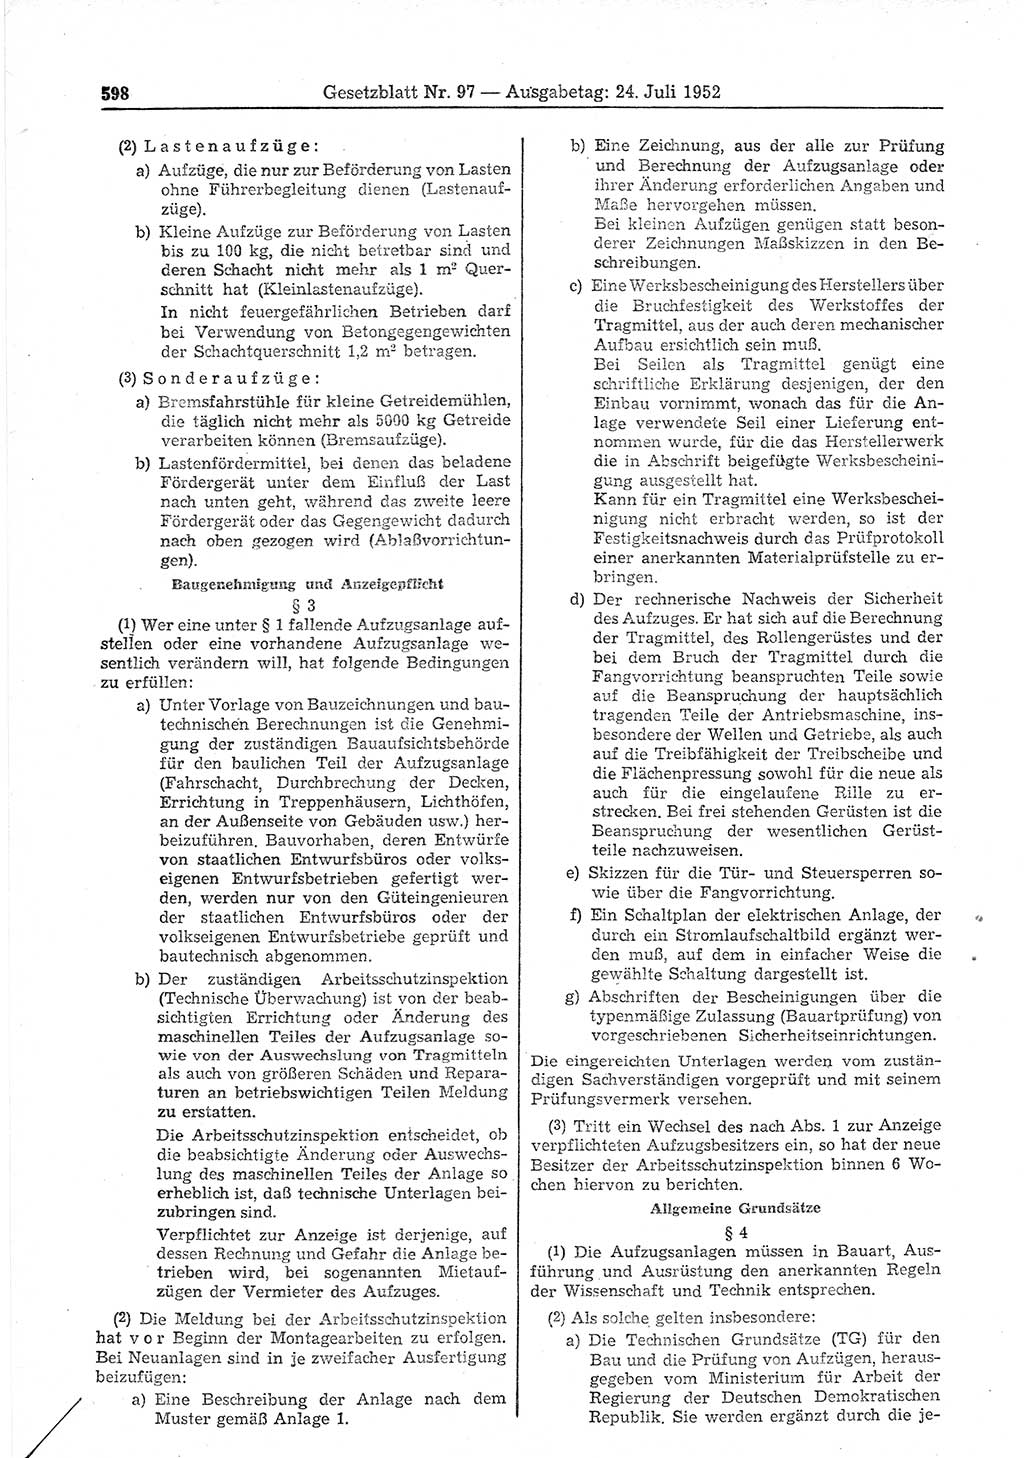 Gesetzblatt (GBl.) der Deutschen Demokratischen Republik (DDR) 1952, Seite 598 (GBl. DDR 1952, S. 598)